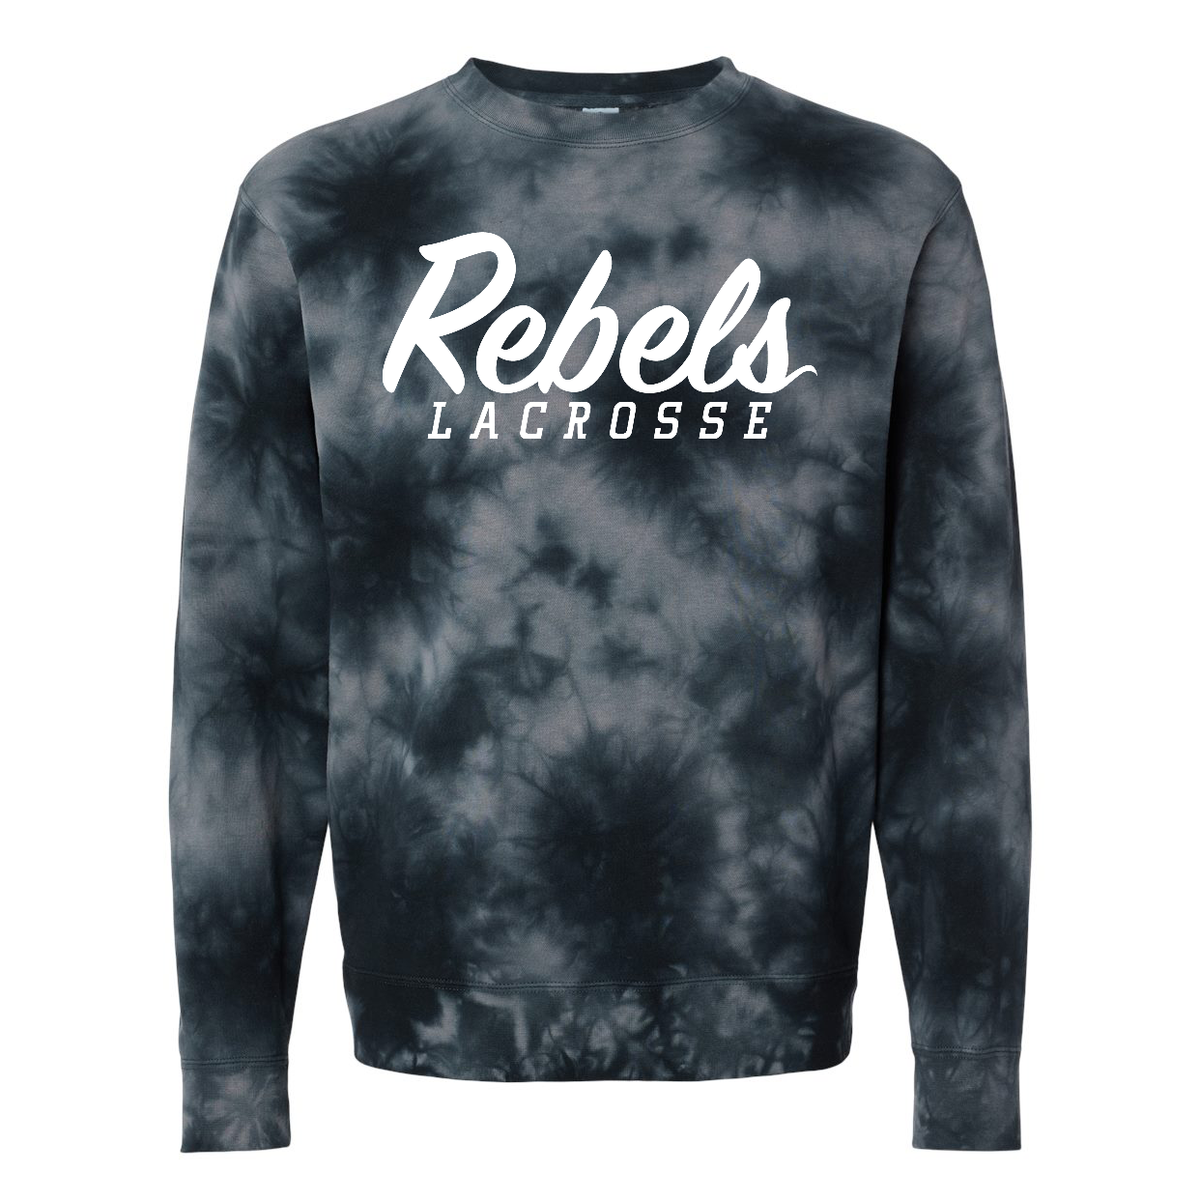 Rebels Lacrosse Tie-Dyed Crewneck Sweatshirt